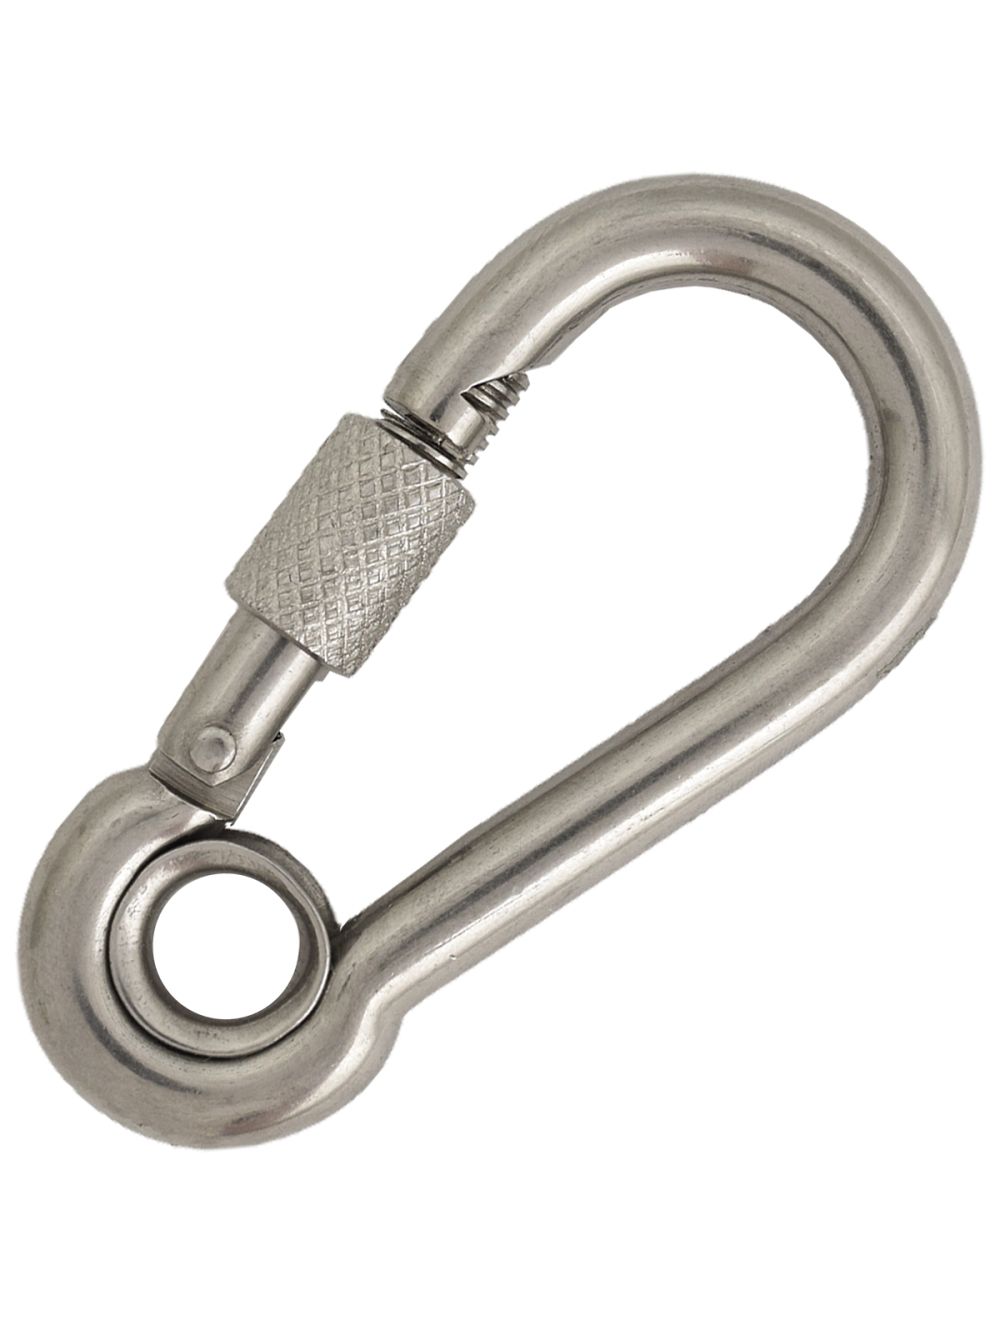 1 in Stainless Steel Snap Hook - Industrial Snap Hooks, Spring Snap Hooks -  Granat Industries, Inc., snap hook